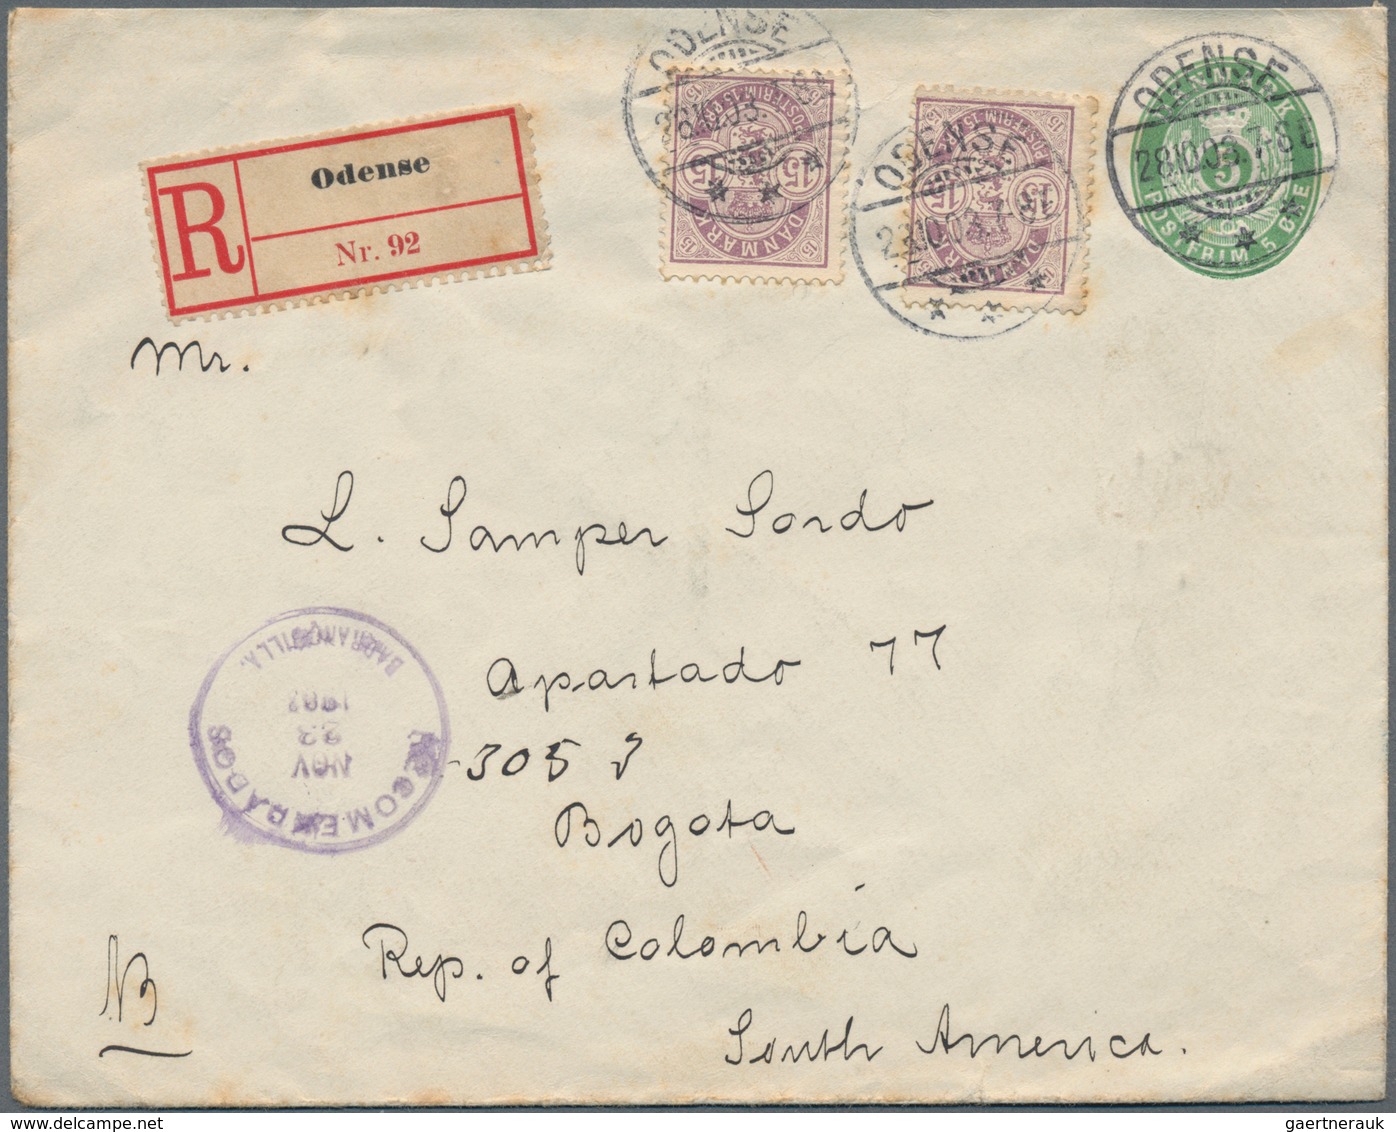 Dänemark - Ganzsachen: 1903 Destination COLOMBIA: Postal Stationery Envelope 5 øre Green Used Regist - Ganzsachen